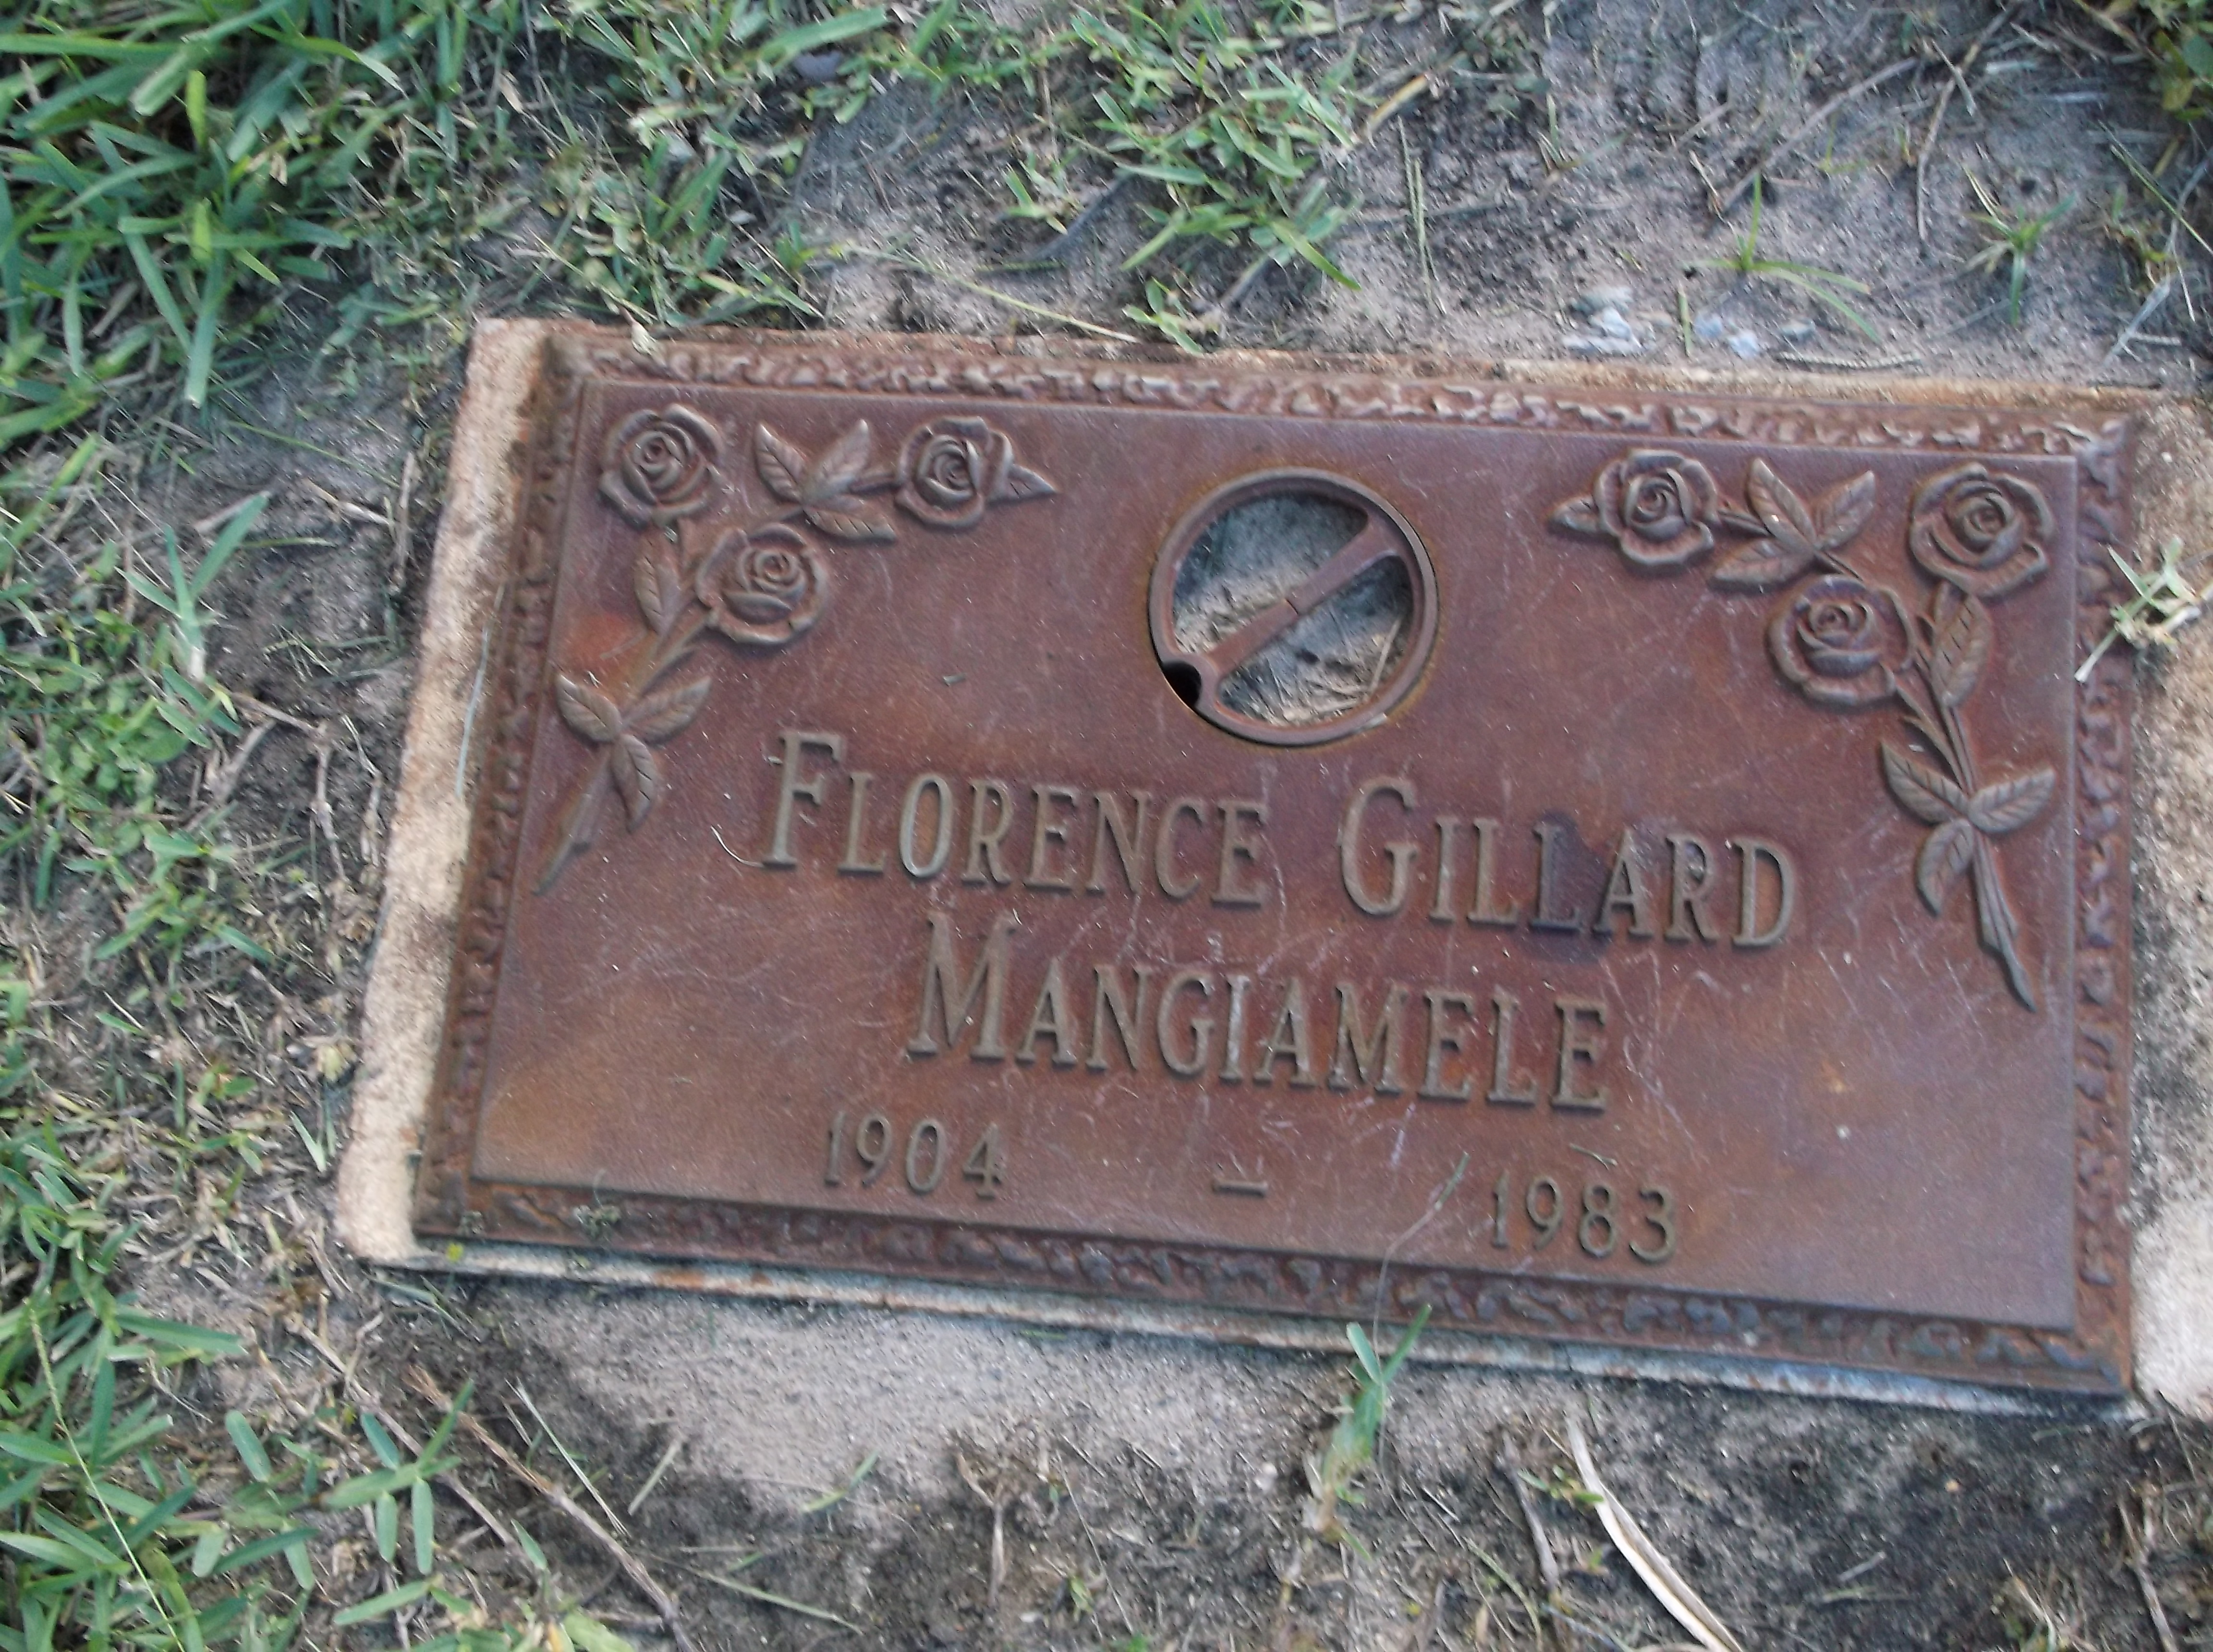 Florence Gillard Mangiamele